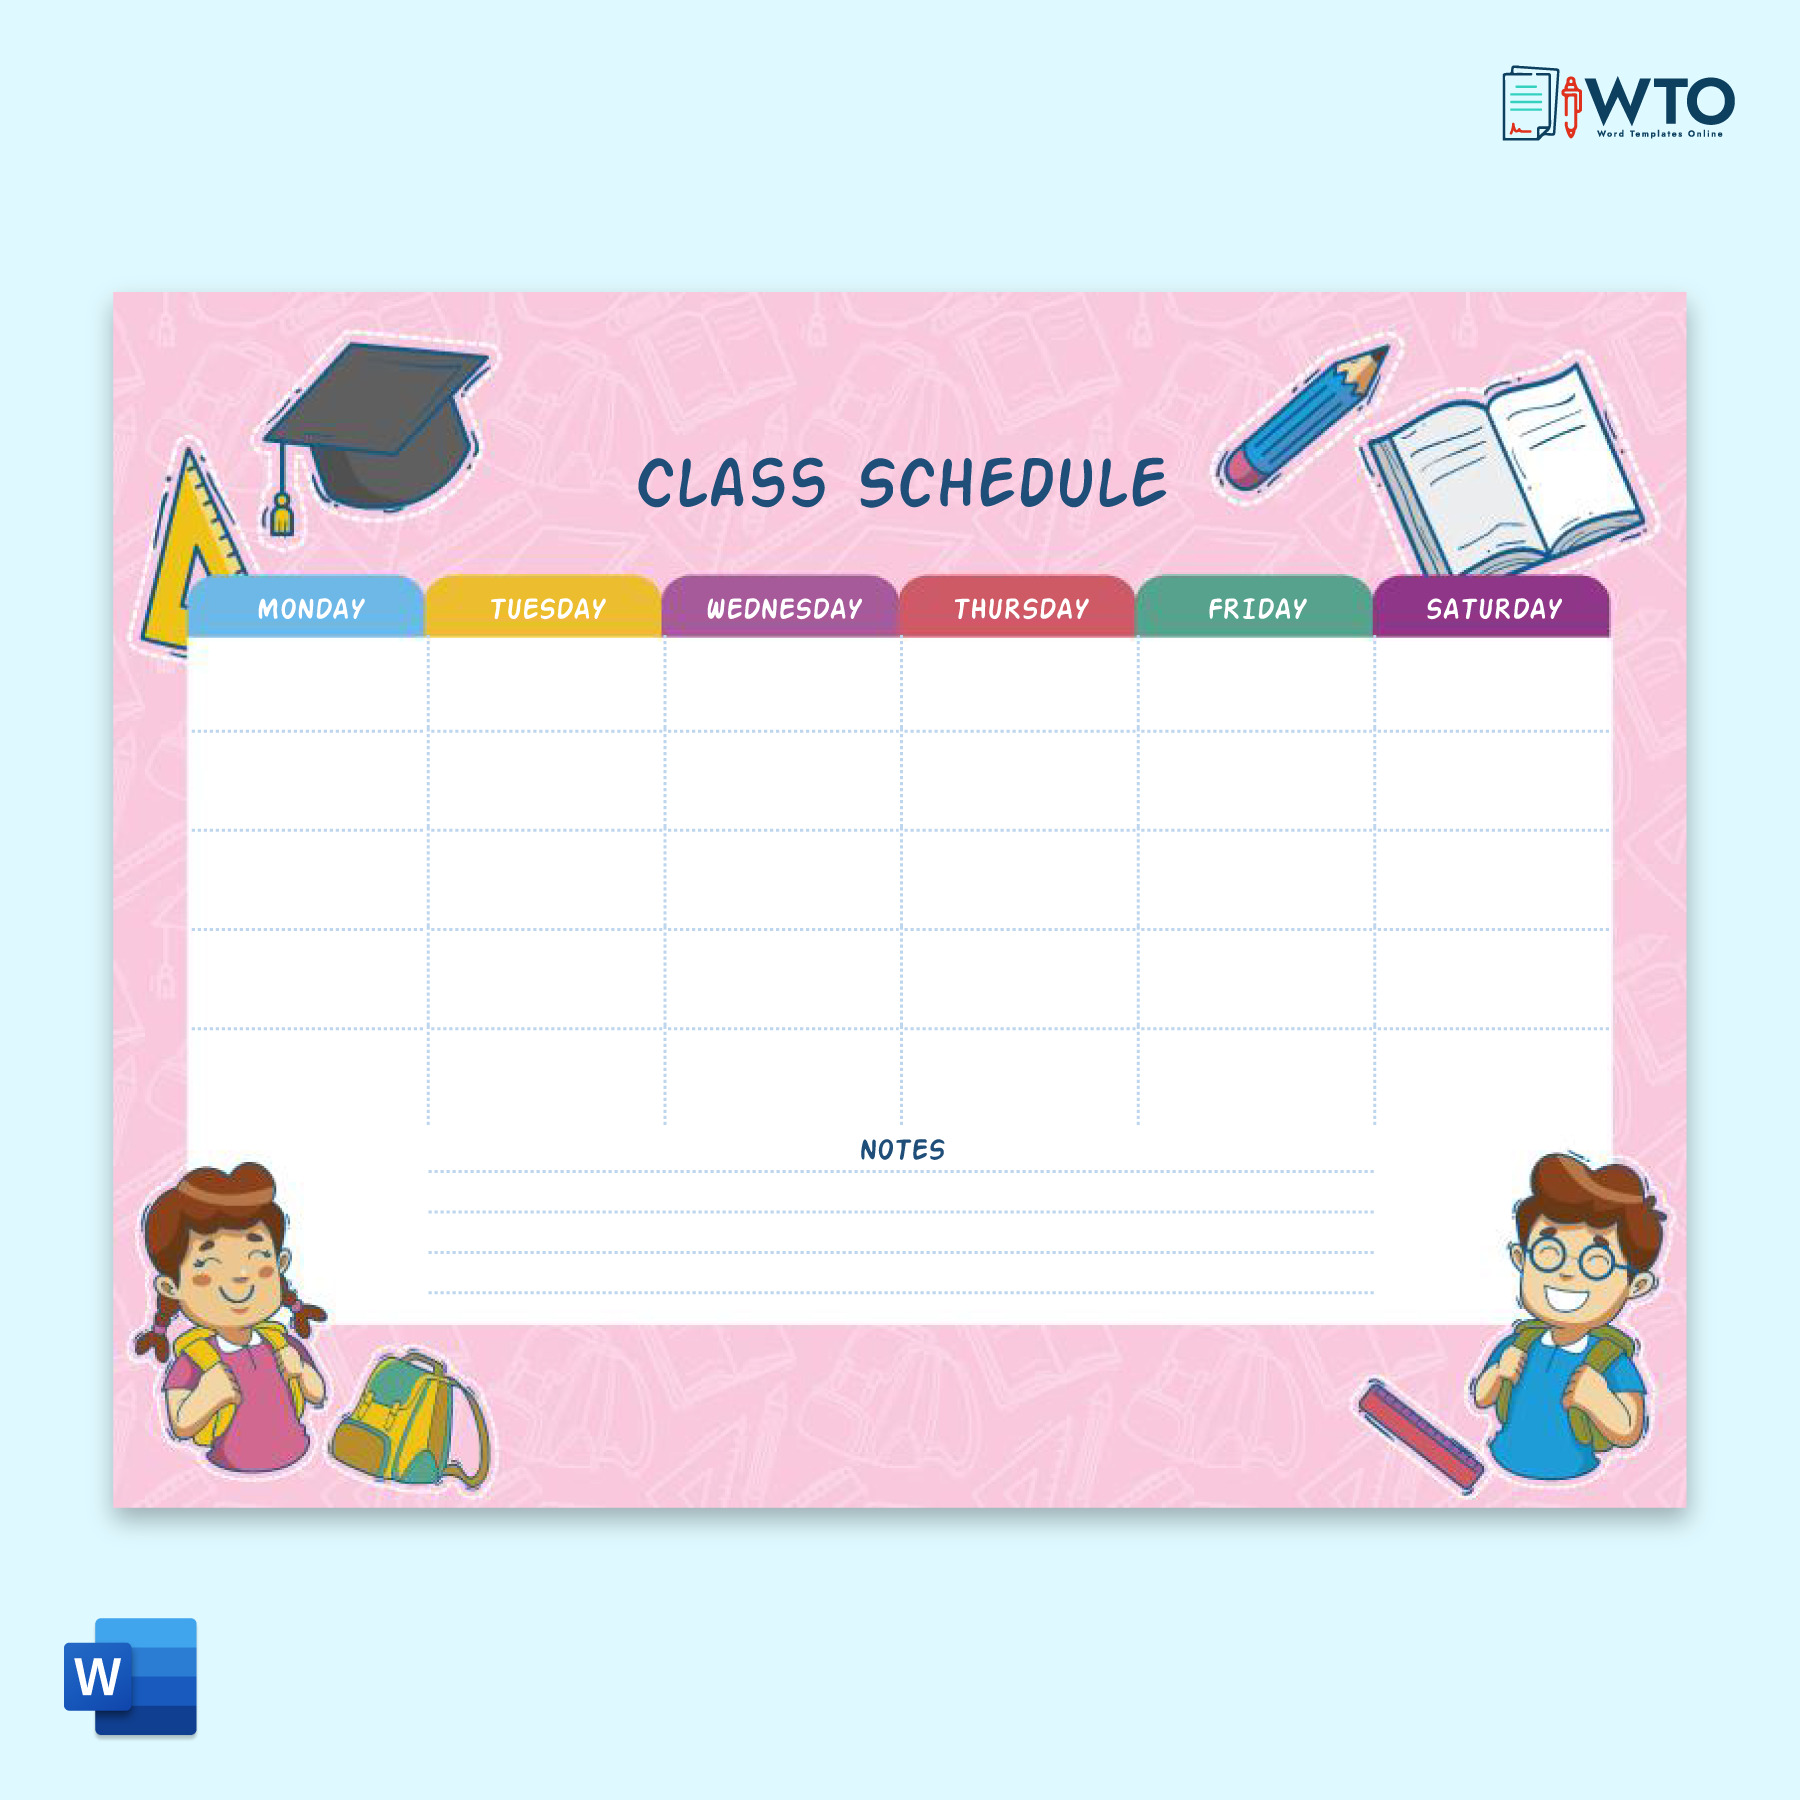 Sample School Schedule Format